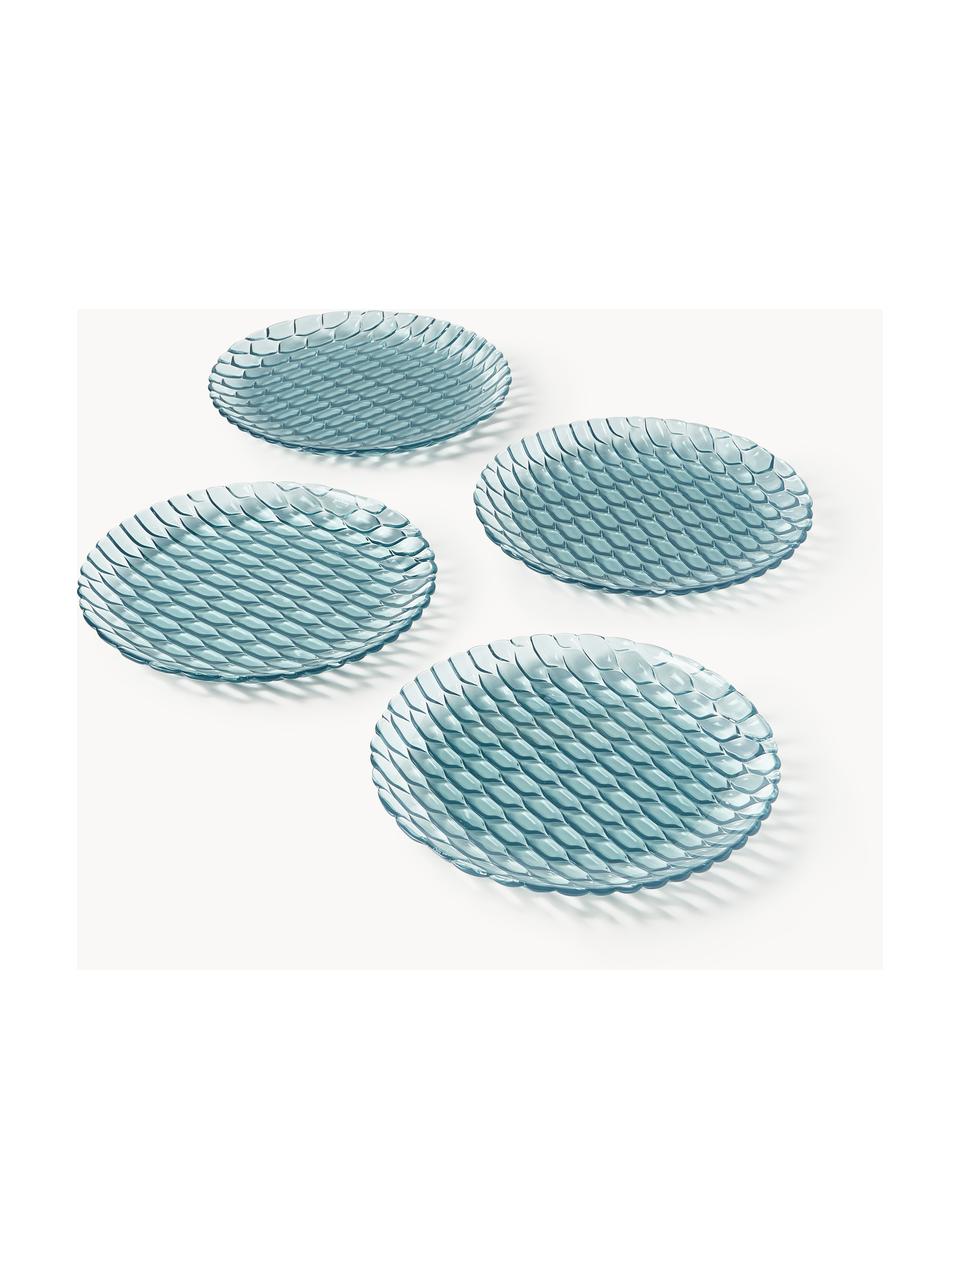 Assiettes plates avec motif texturé Jellies, 4 pièces, Plastique, Bleu ciel, Ø 27 cm